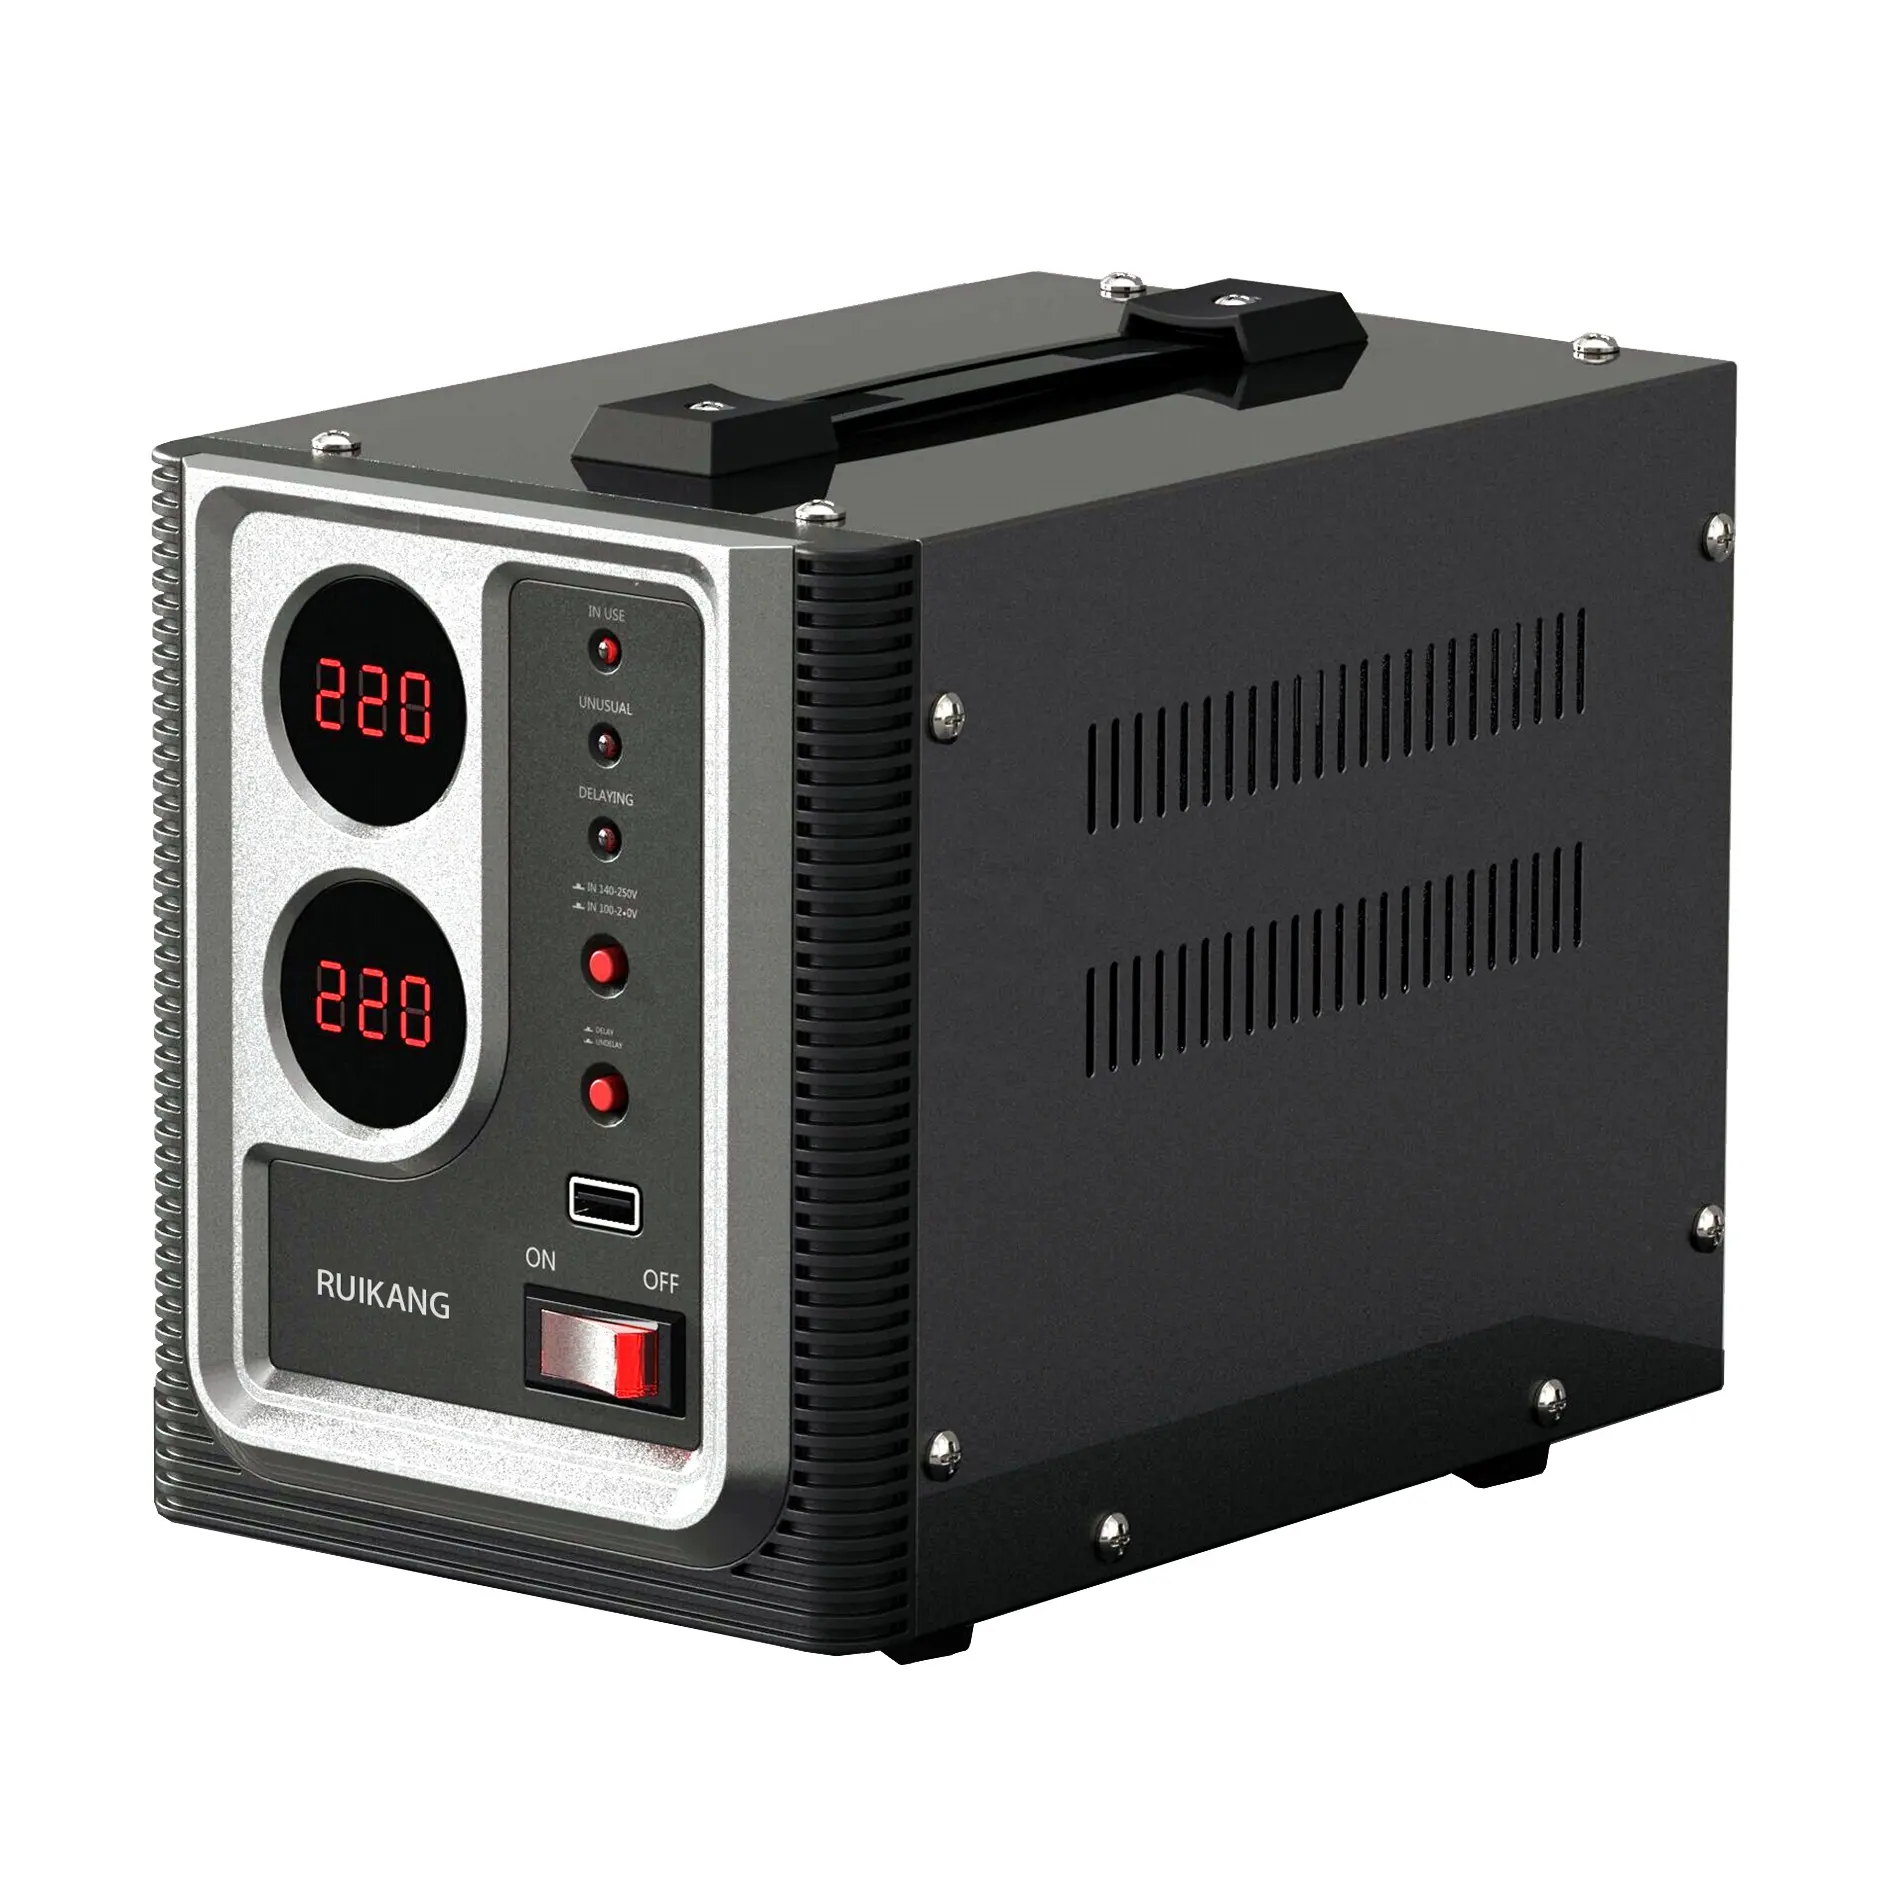 RUIAKNG marca OEM prezzo di fabbrica 220V AC tipo di relè protezione TV regolatori/stabilizzatori di tensione elettrici per tutta la casa